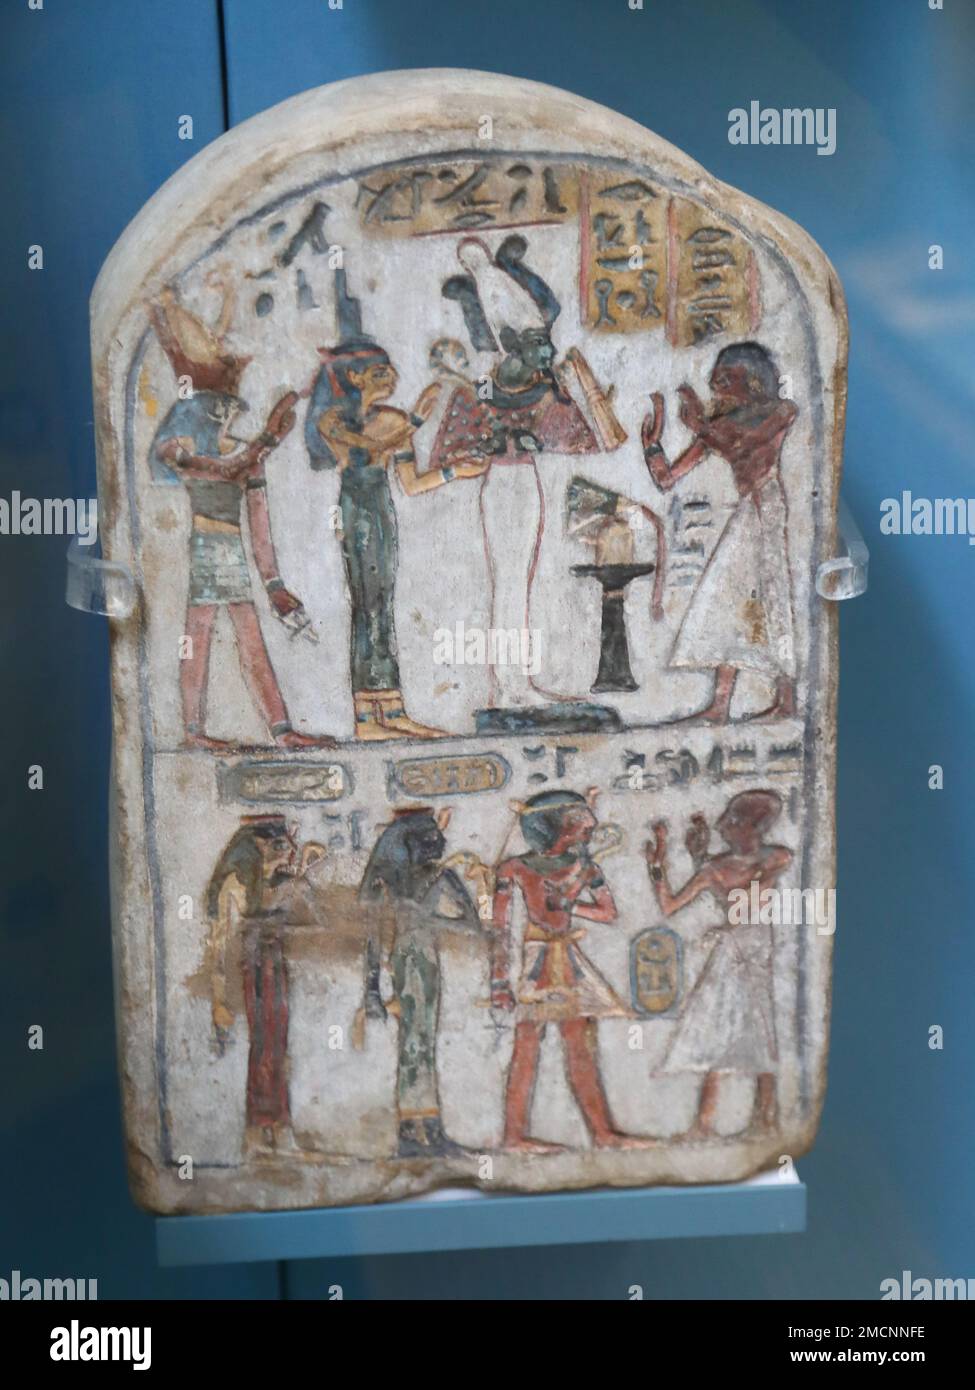 Ägyptisch gemalte Kalksteinstela mit Bewunderung verstorbener Mitglieder der königlichen Familie der 18. Dynastie im British Museum, London, Großbritannien Stockfoto